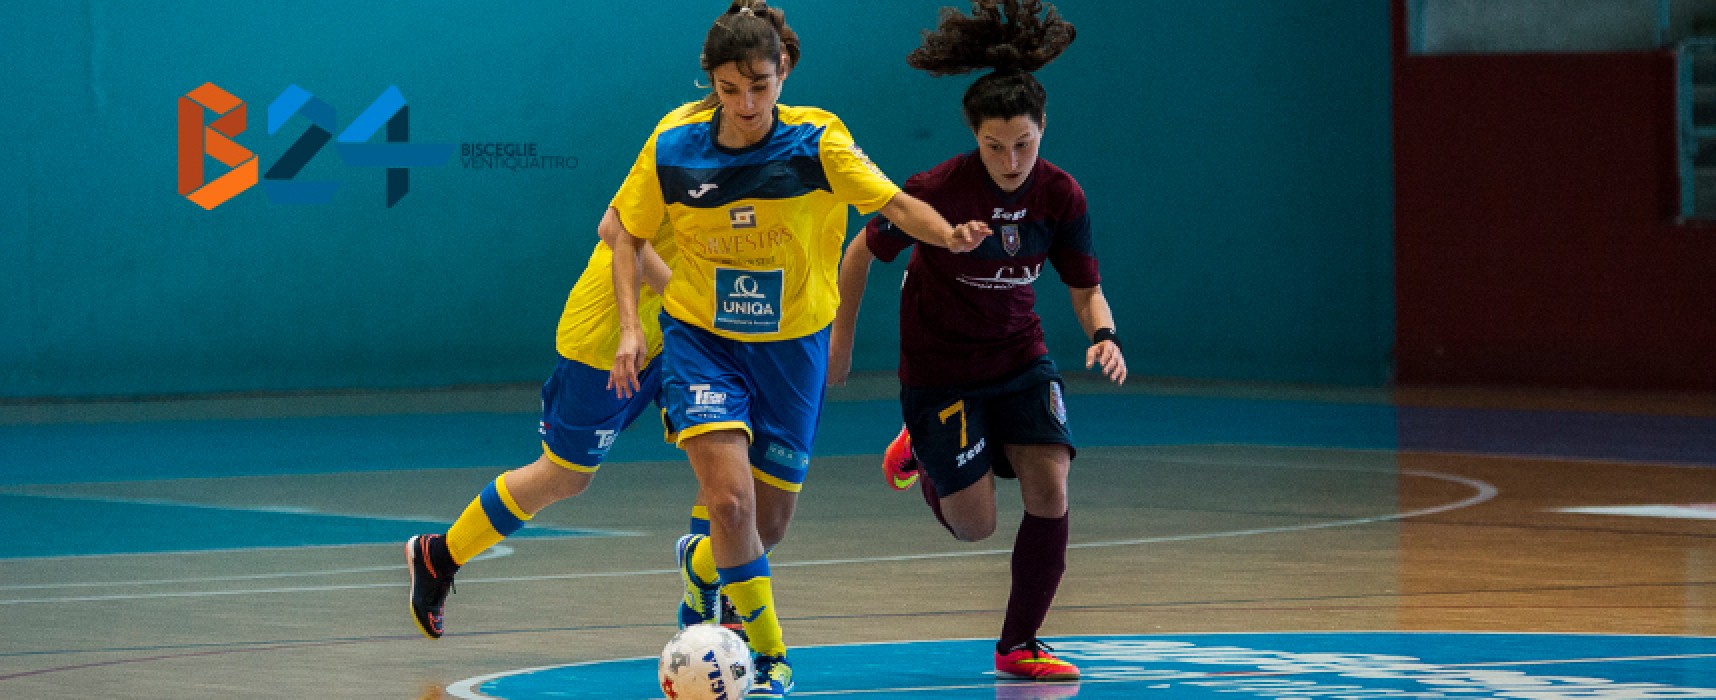 Futsal Bisceglie femminile, 4 gol a Policoro e terzo posto / CLASSIFICA